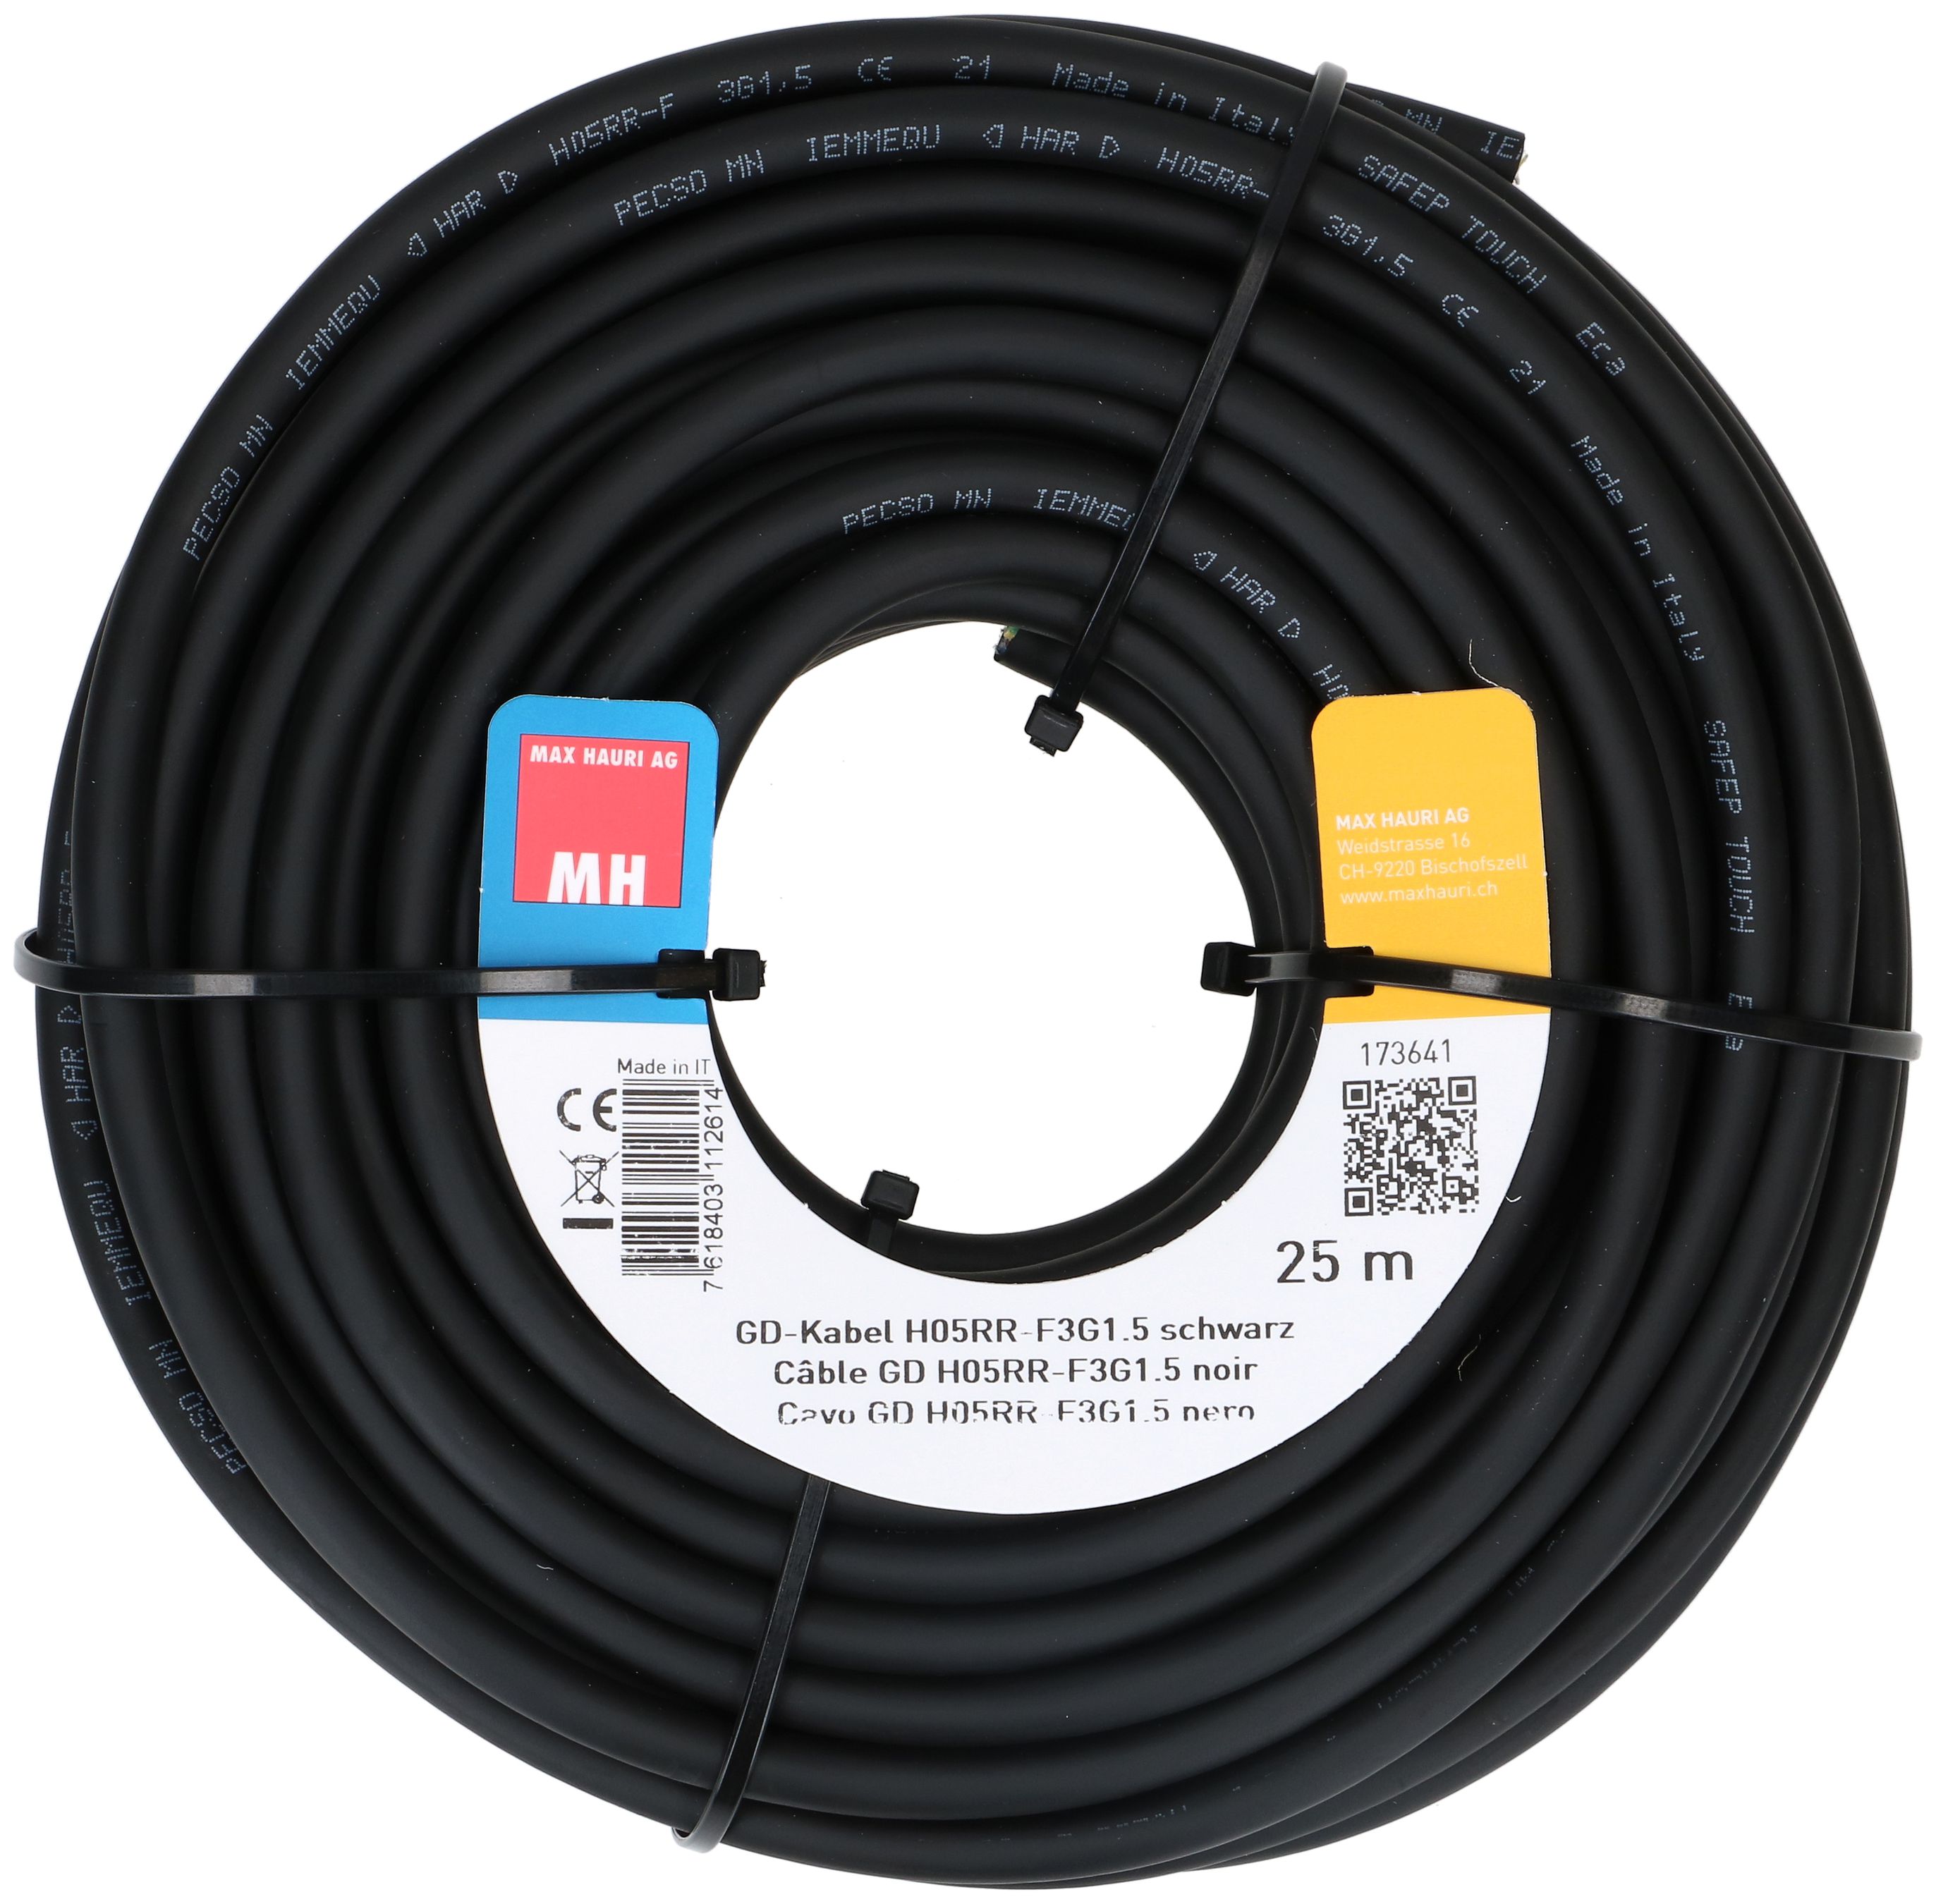 GD-Kabel H05RR-F3G1.5 25m schwarz